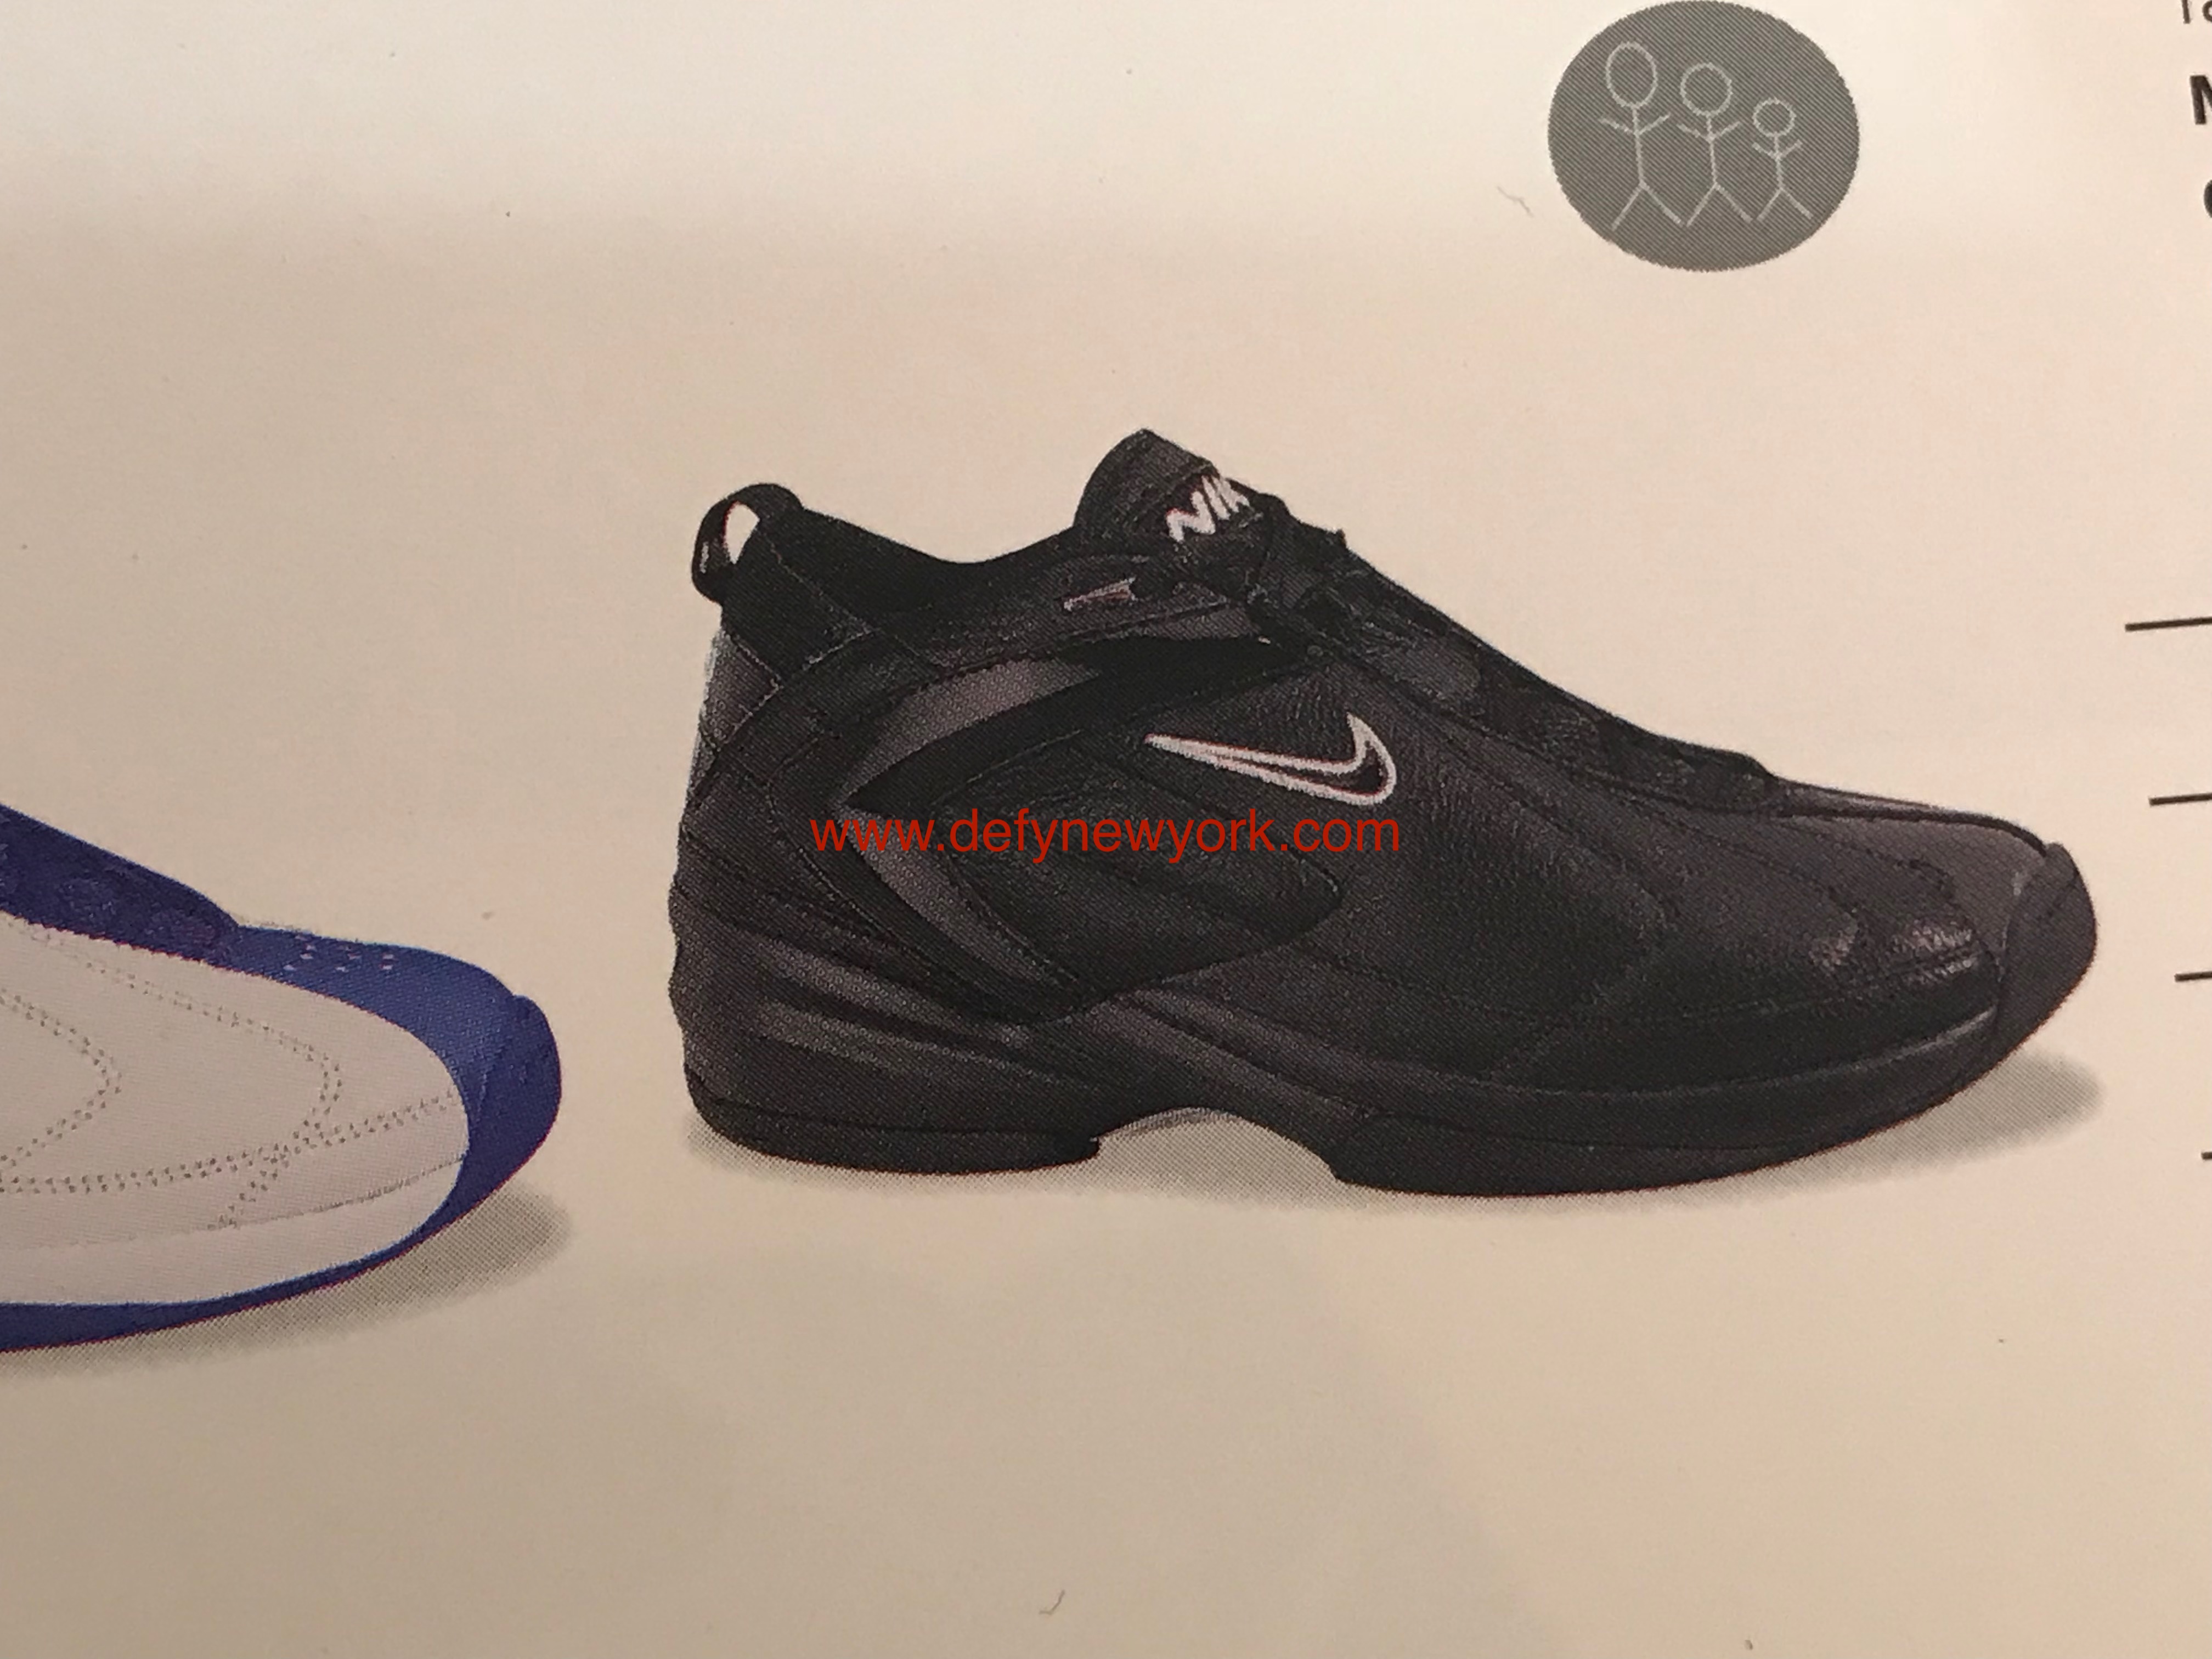 Nike End 2 End Basketball Shoe 2003